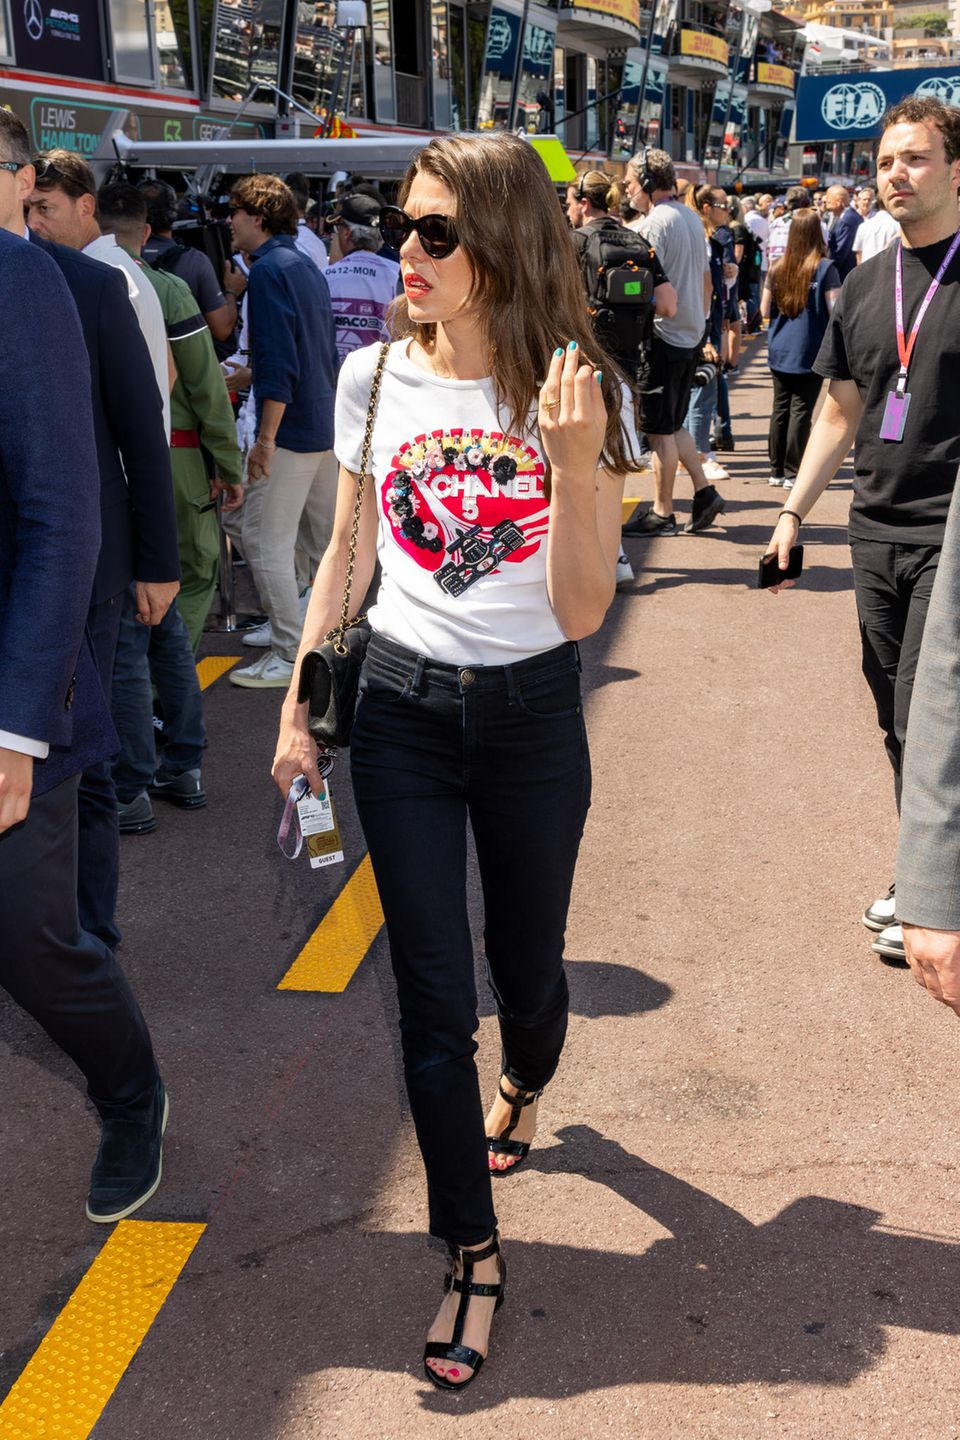 In enger Röhrenjeans und natürlich von Kopf bis Fuß in Chanel besucht Charlotte Casiraghi das Qualifying am Tag vor dem Großen Preis von Monaco. Hier fällt vor allem ihr lässiges Print-Shirt auf, das sie farblich mit ihrem roten Lippenstift wieder aufgreift. Eine schwarze Sonnenbrille rundet den Cool-Girl-Look ab.